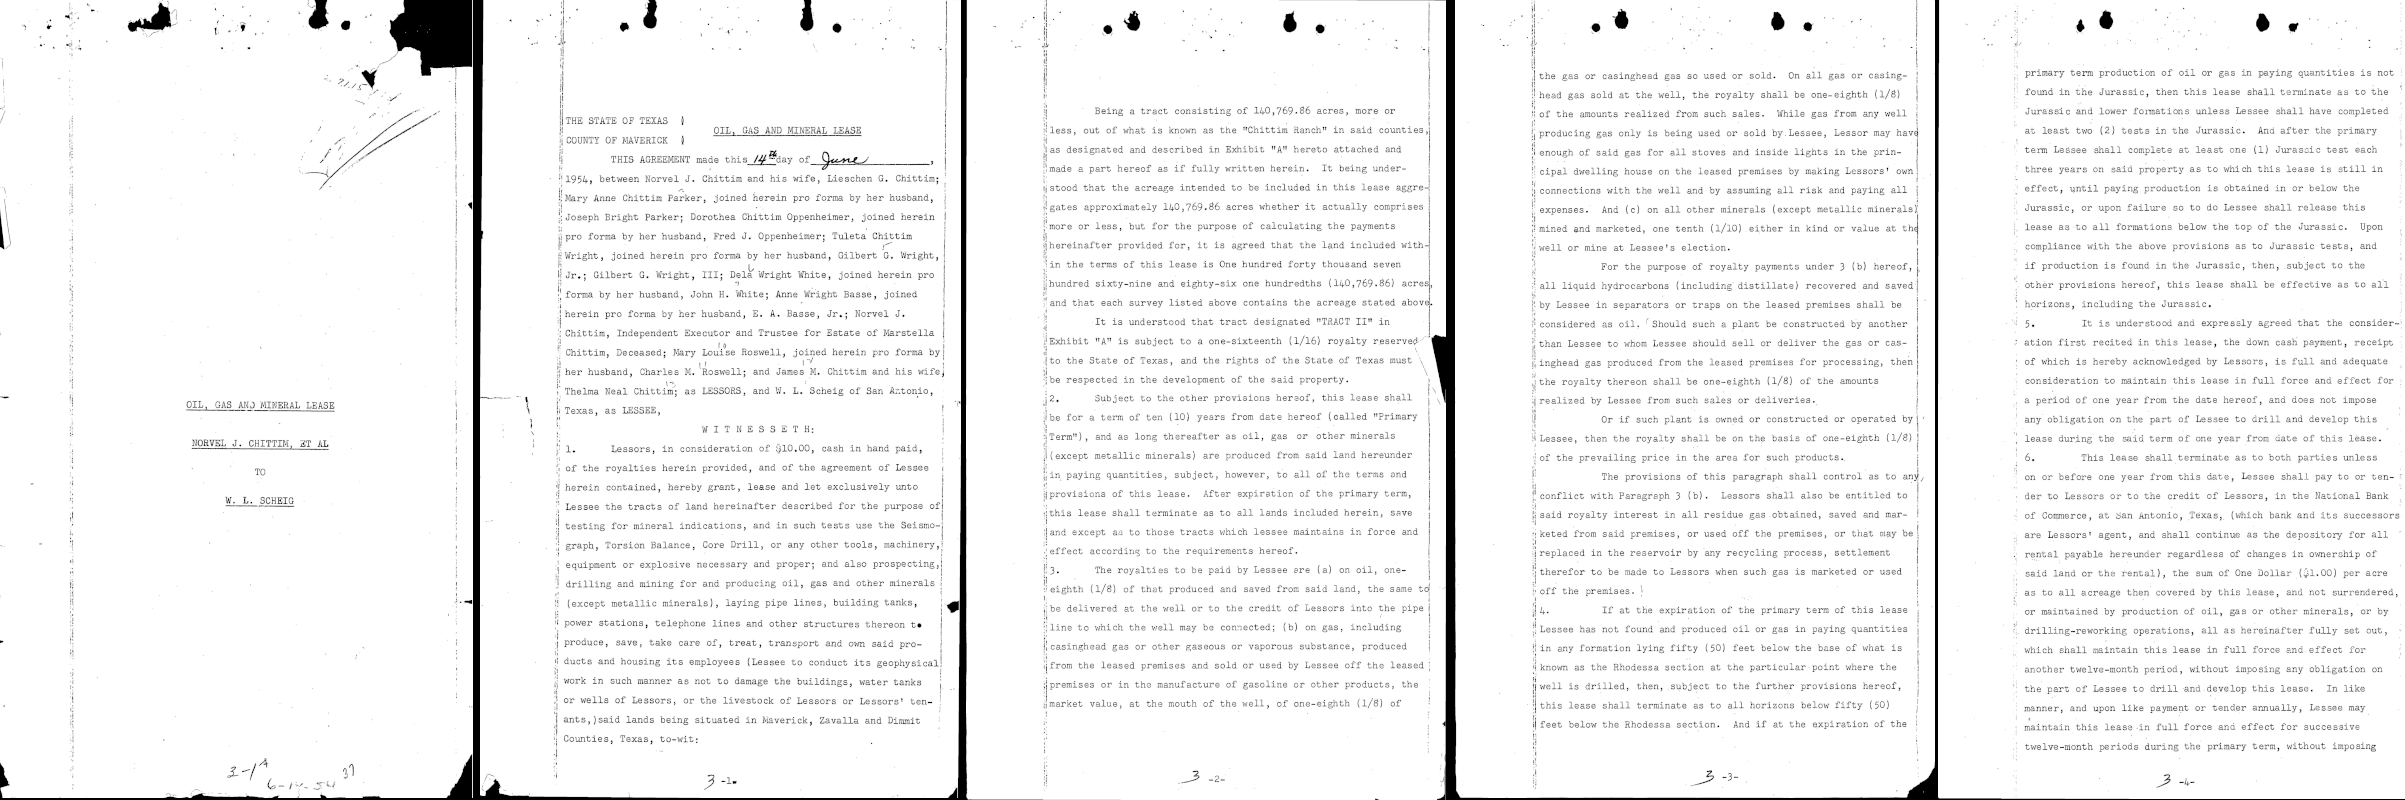 primeiras cinco páginas de um arquivo PDF